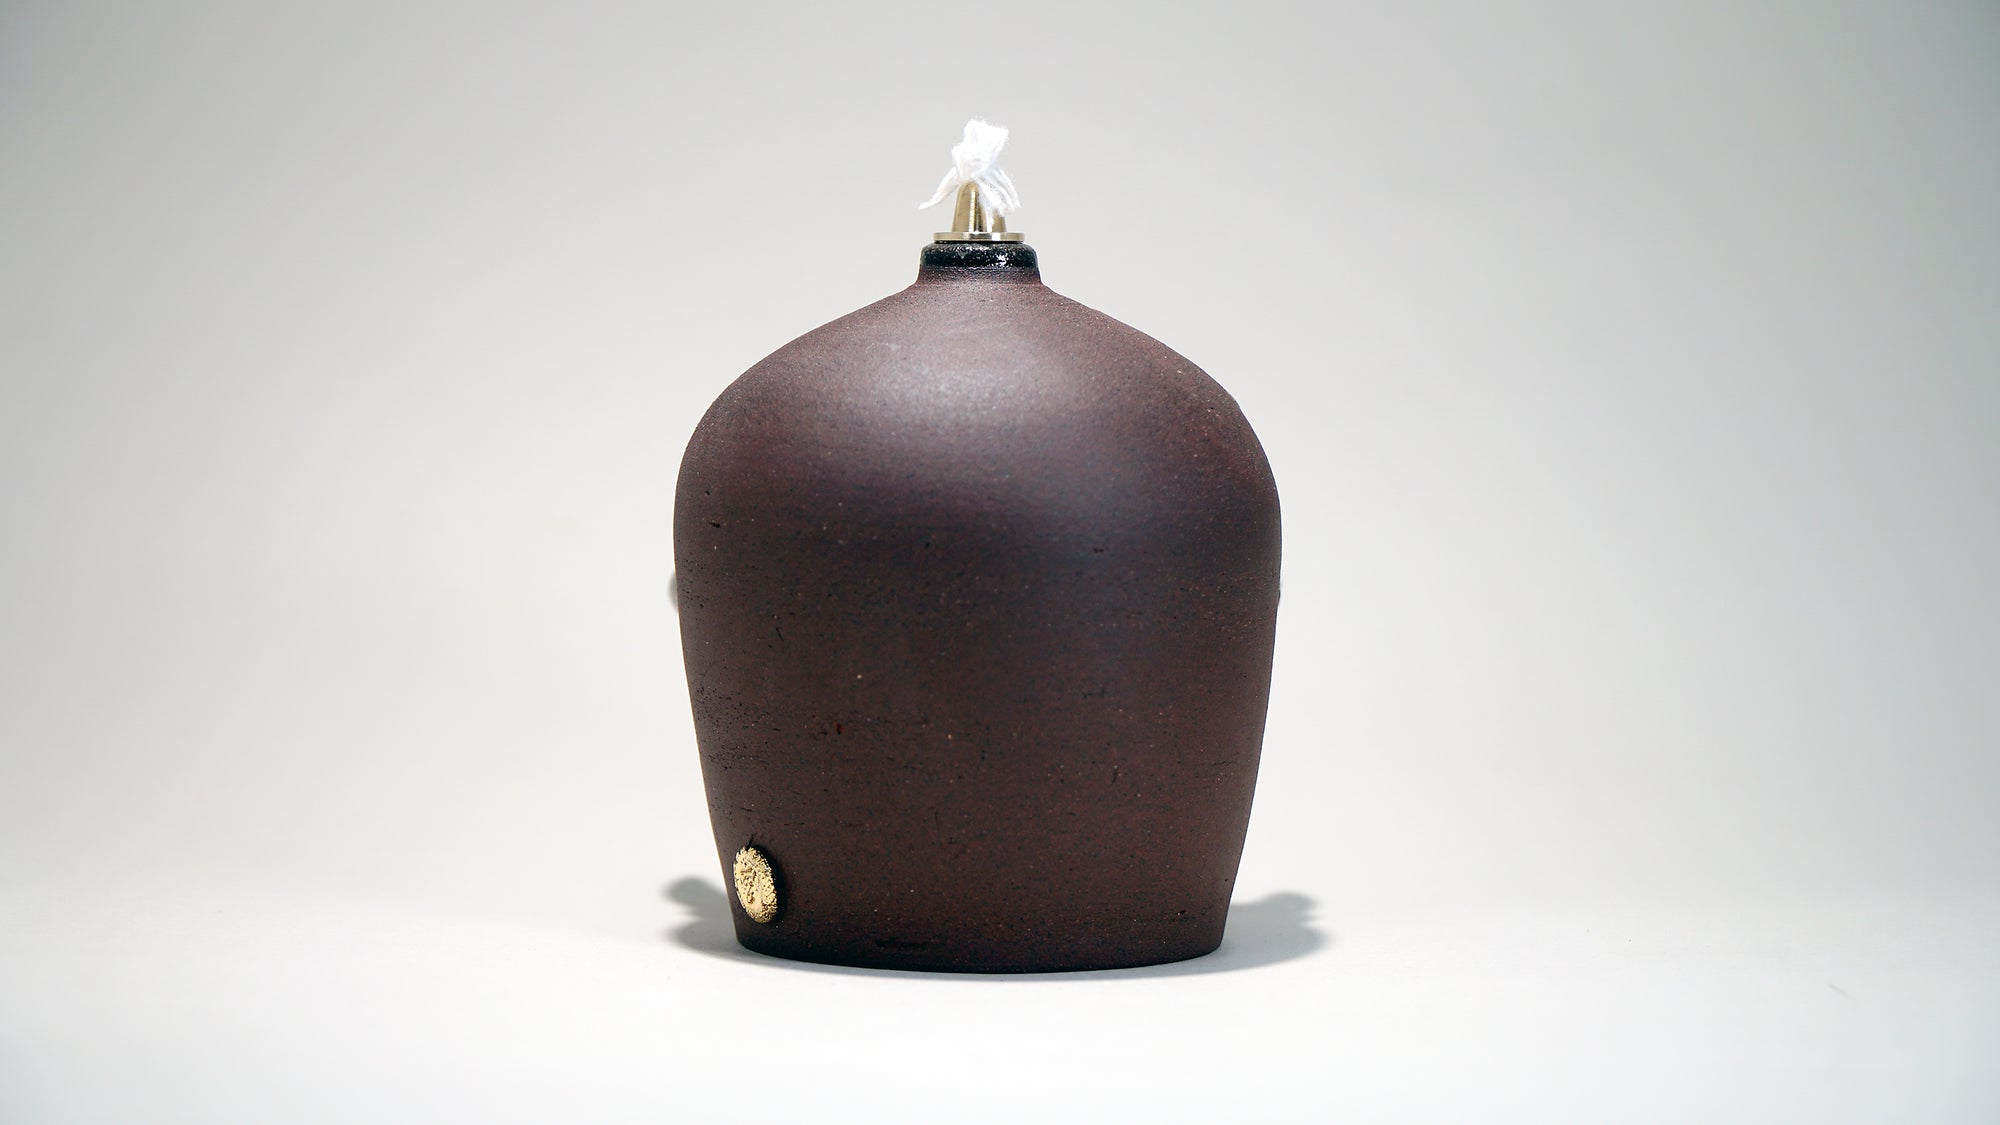 Dogabi Oil Lamp #573 - "Ruthie" - Space Camp